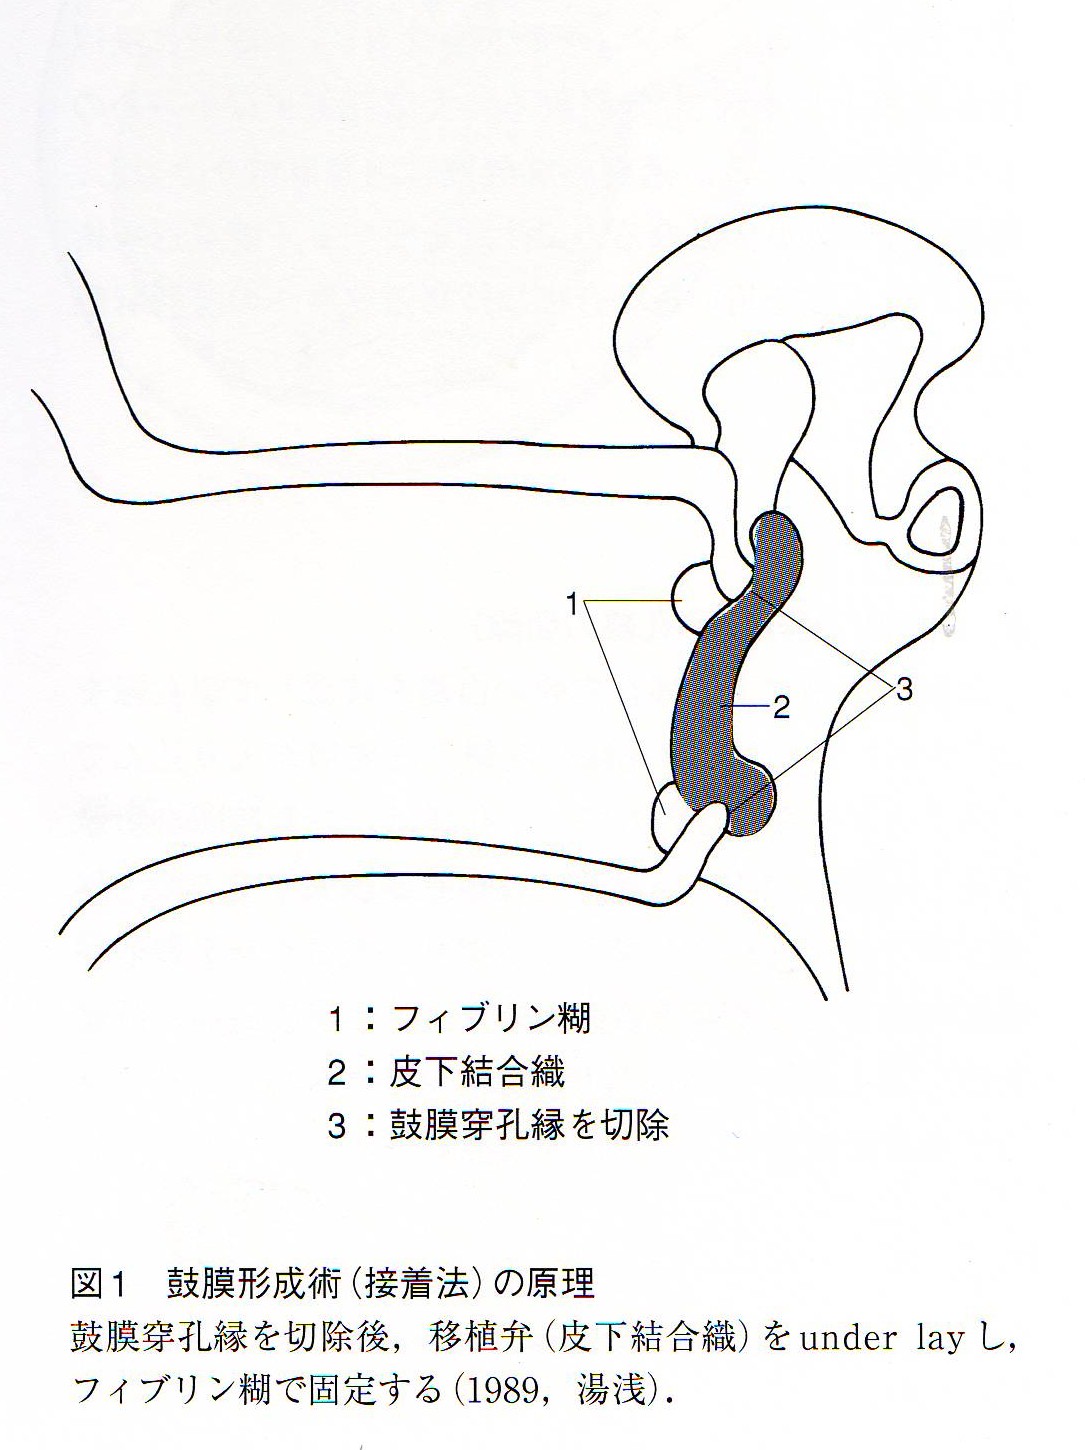 鼓膜穿孔に対する鼓膜形成術(接着法)